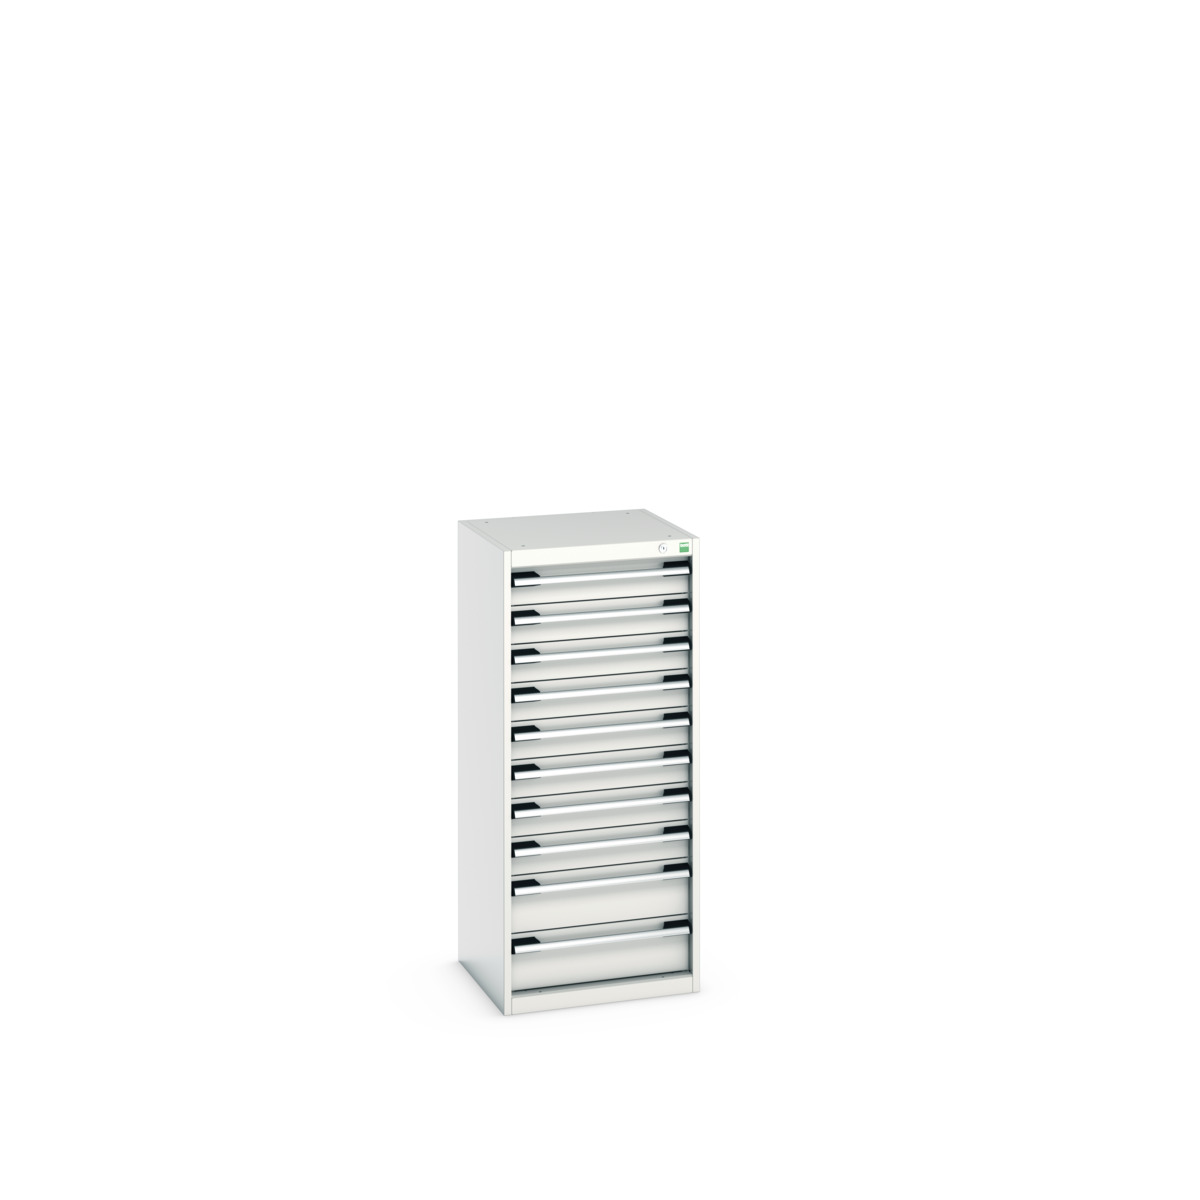 40010123.16V - cubio drawer cabinet